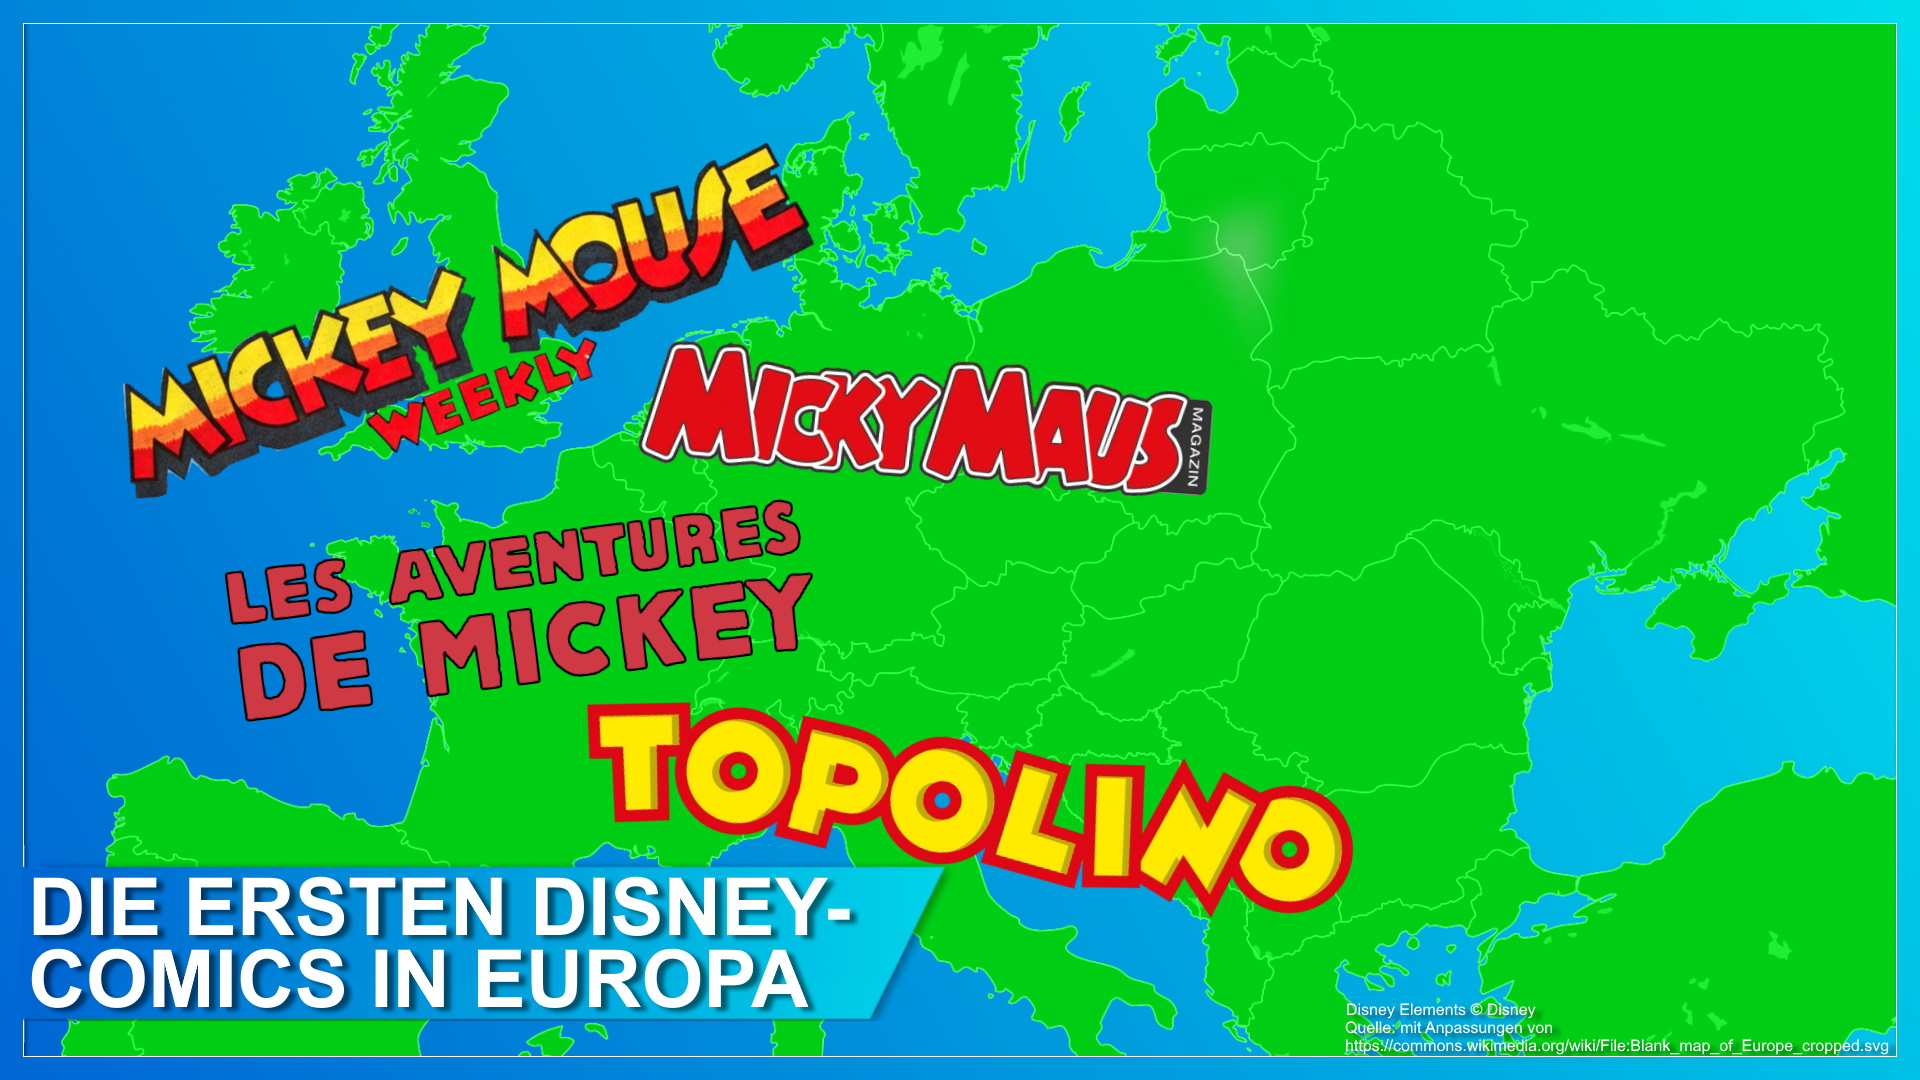 Die ersten Disney-Comics in Europa